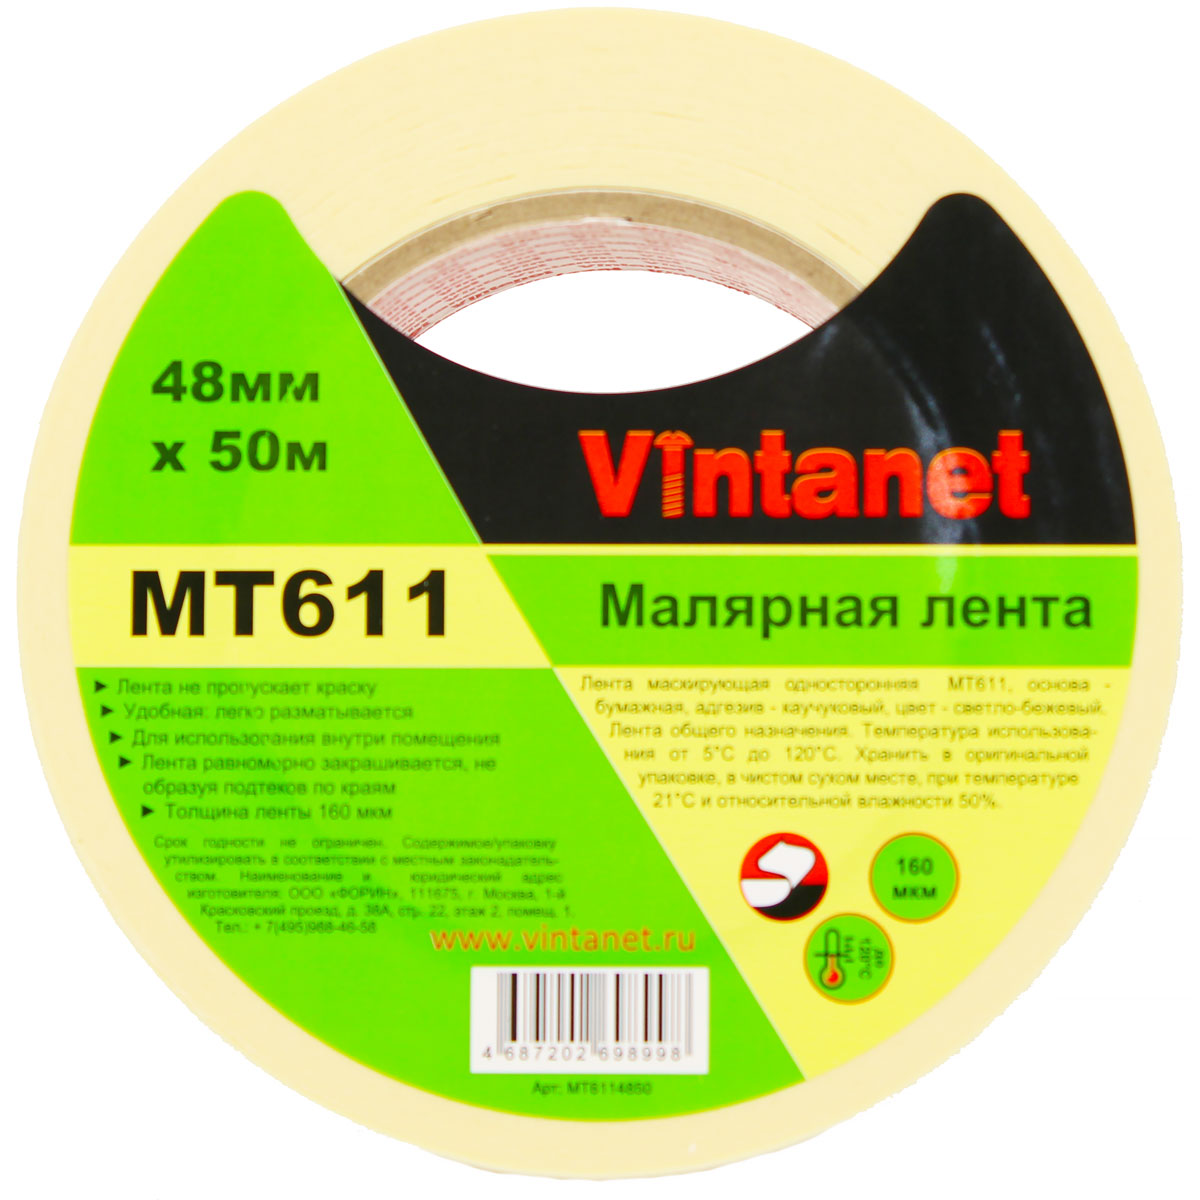 Лента малярная высокотемпературная Vintanet MT611, 120 С, 160 мкм, 48мм х 50м, MT6114850 деликатная малярная лента arch